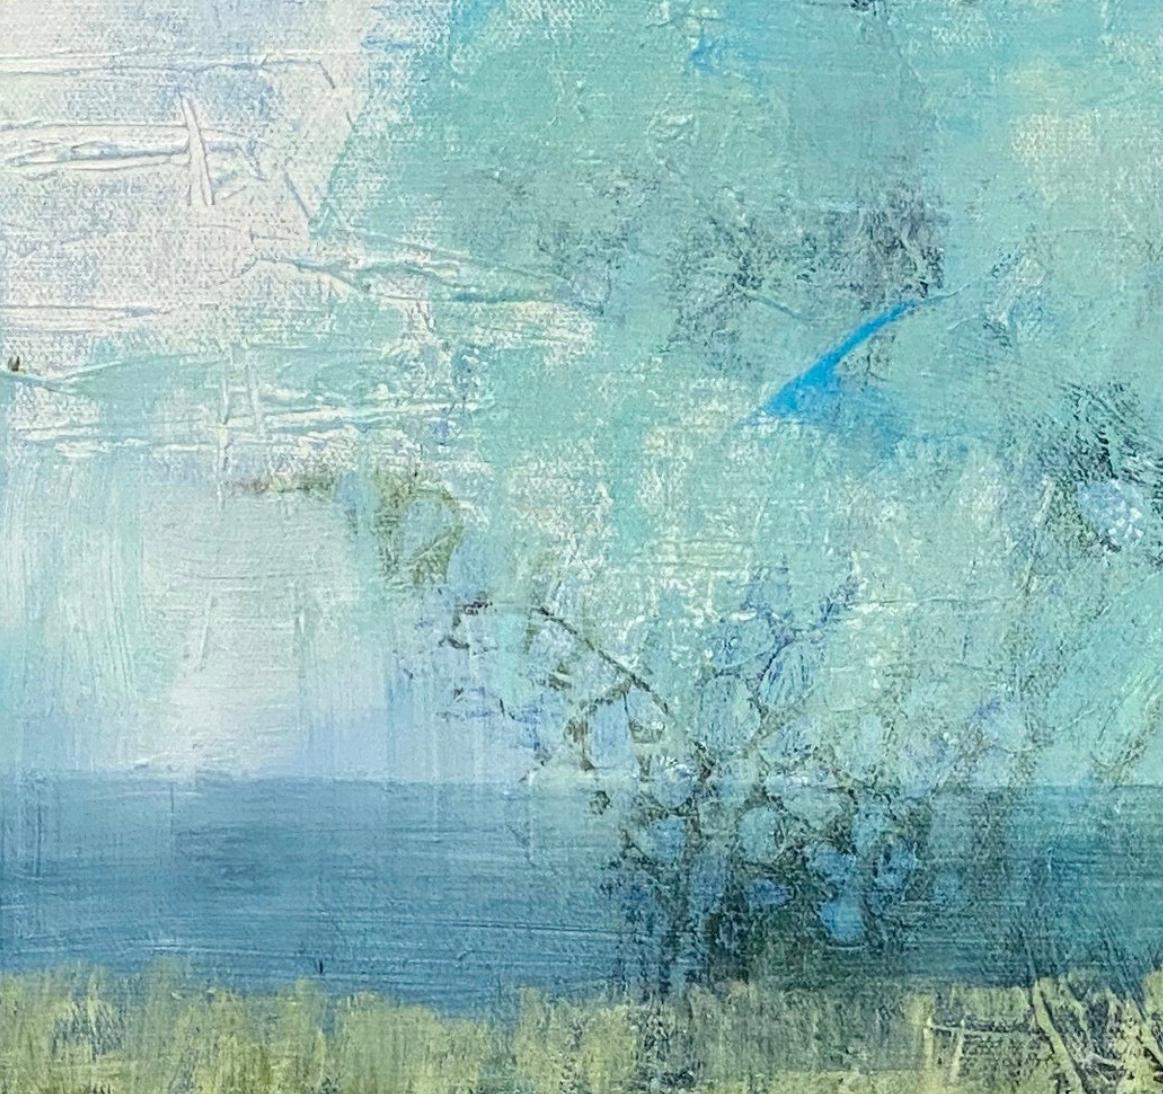 Where the Marshes run low, abstrakte Landschaft, grn und blau. Smpfe – Painting von Juanita Bellavance 